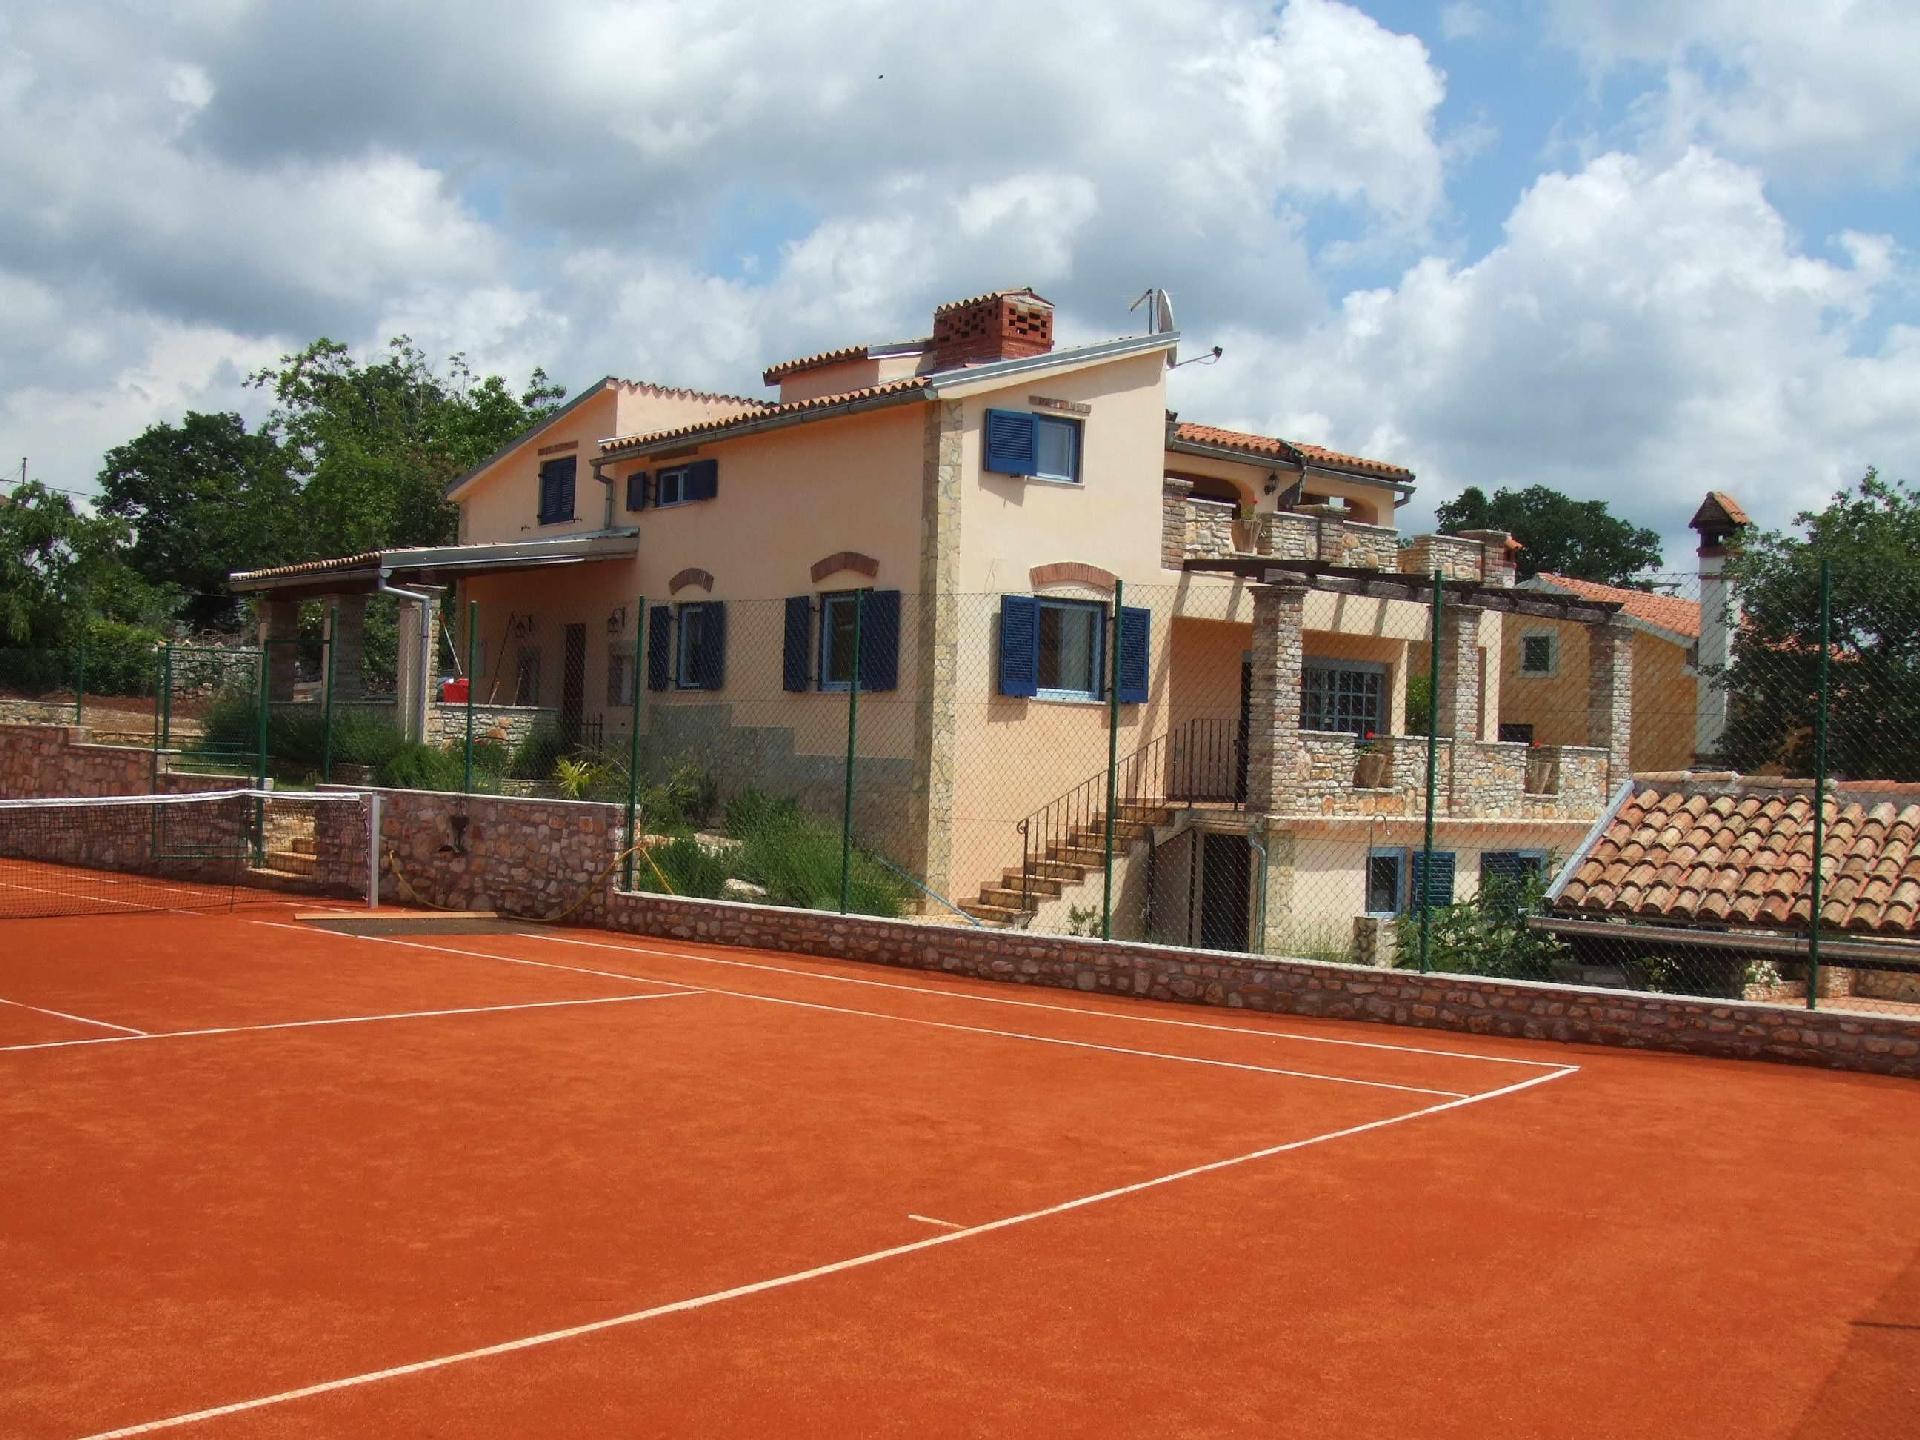  Ruhiggelegene Villa mit eigenem Tennisplatz und P Ferienhaus in Europa